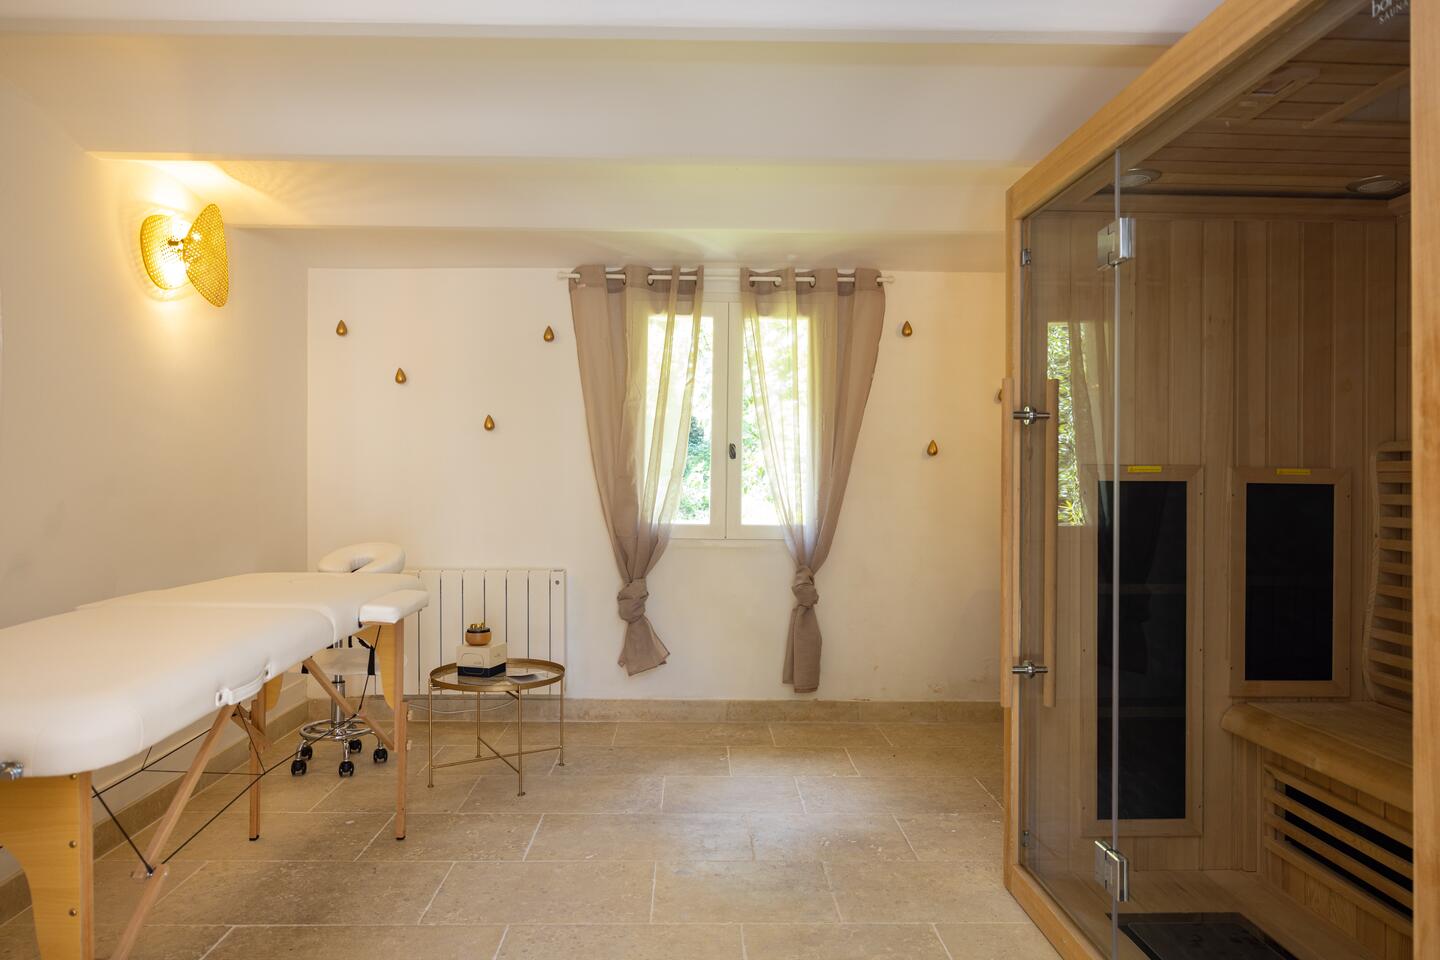 48 - Bastide de Goult: Villa: Interior - Polaris\' bathroom